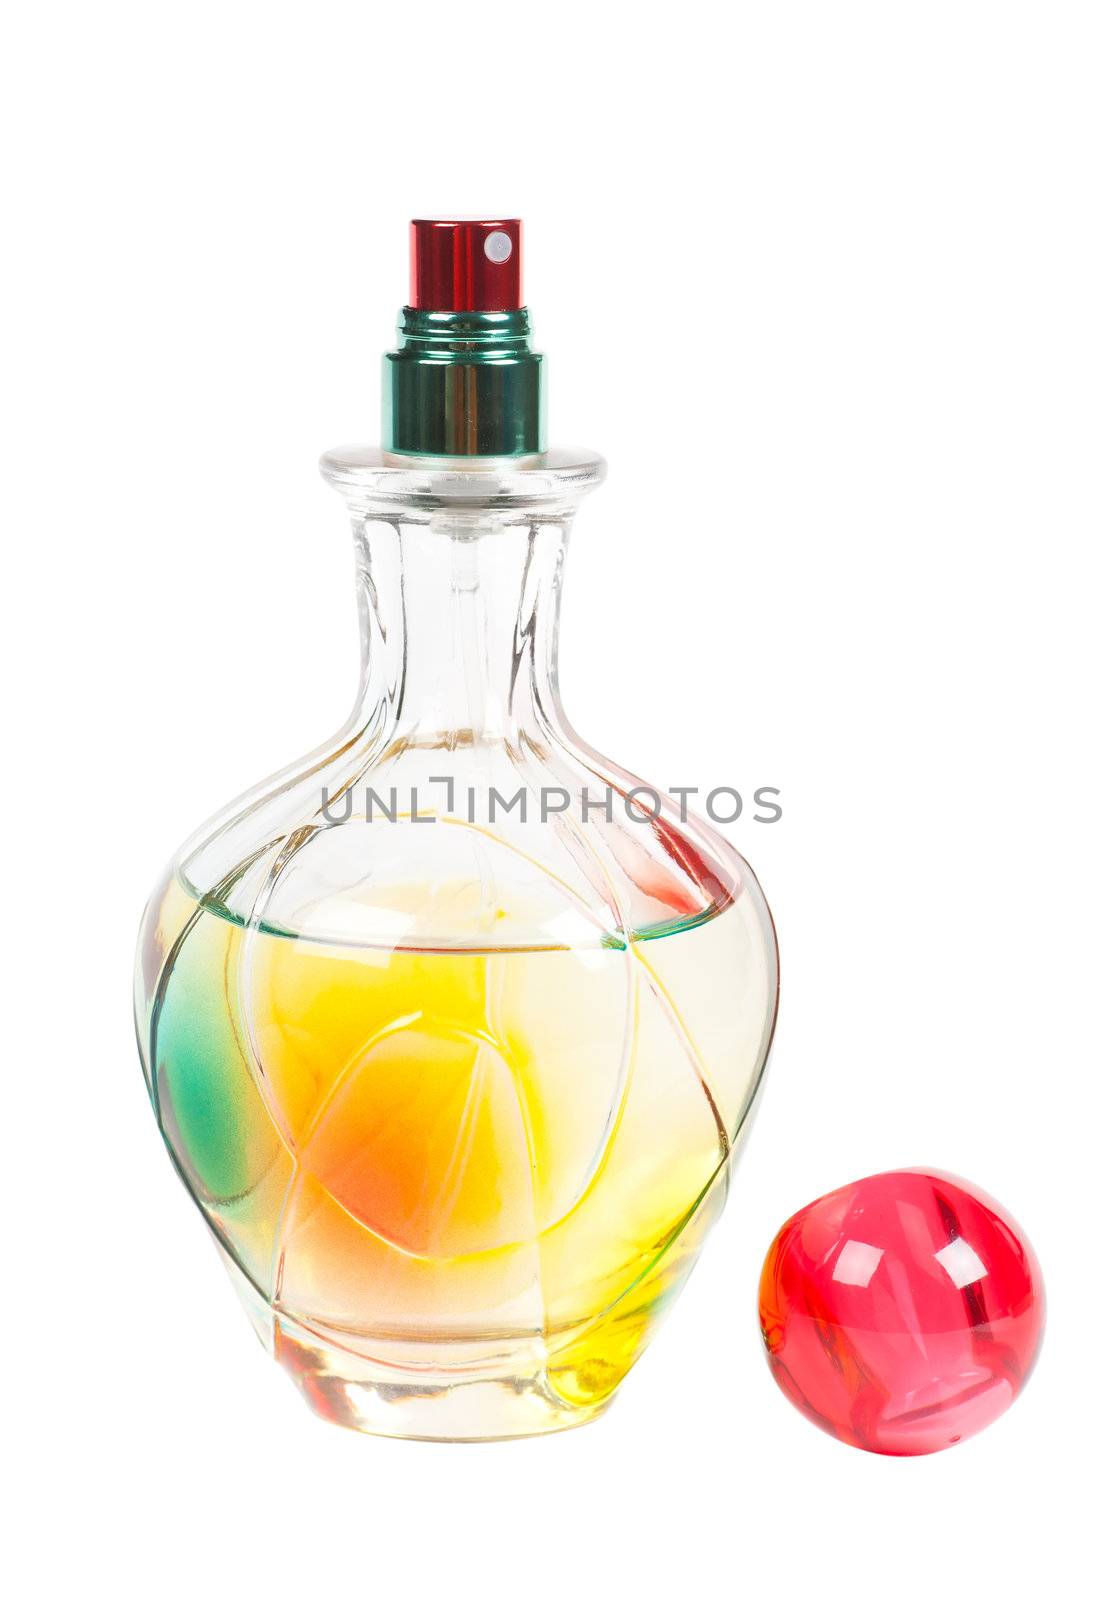 Perfume sprayer by AGorohov